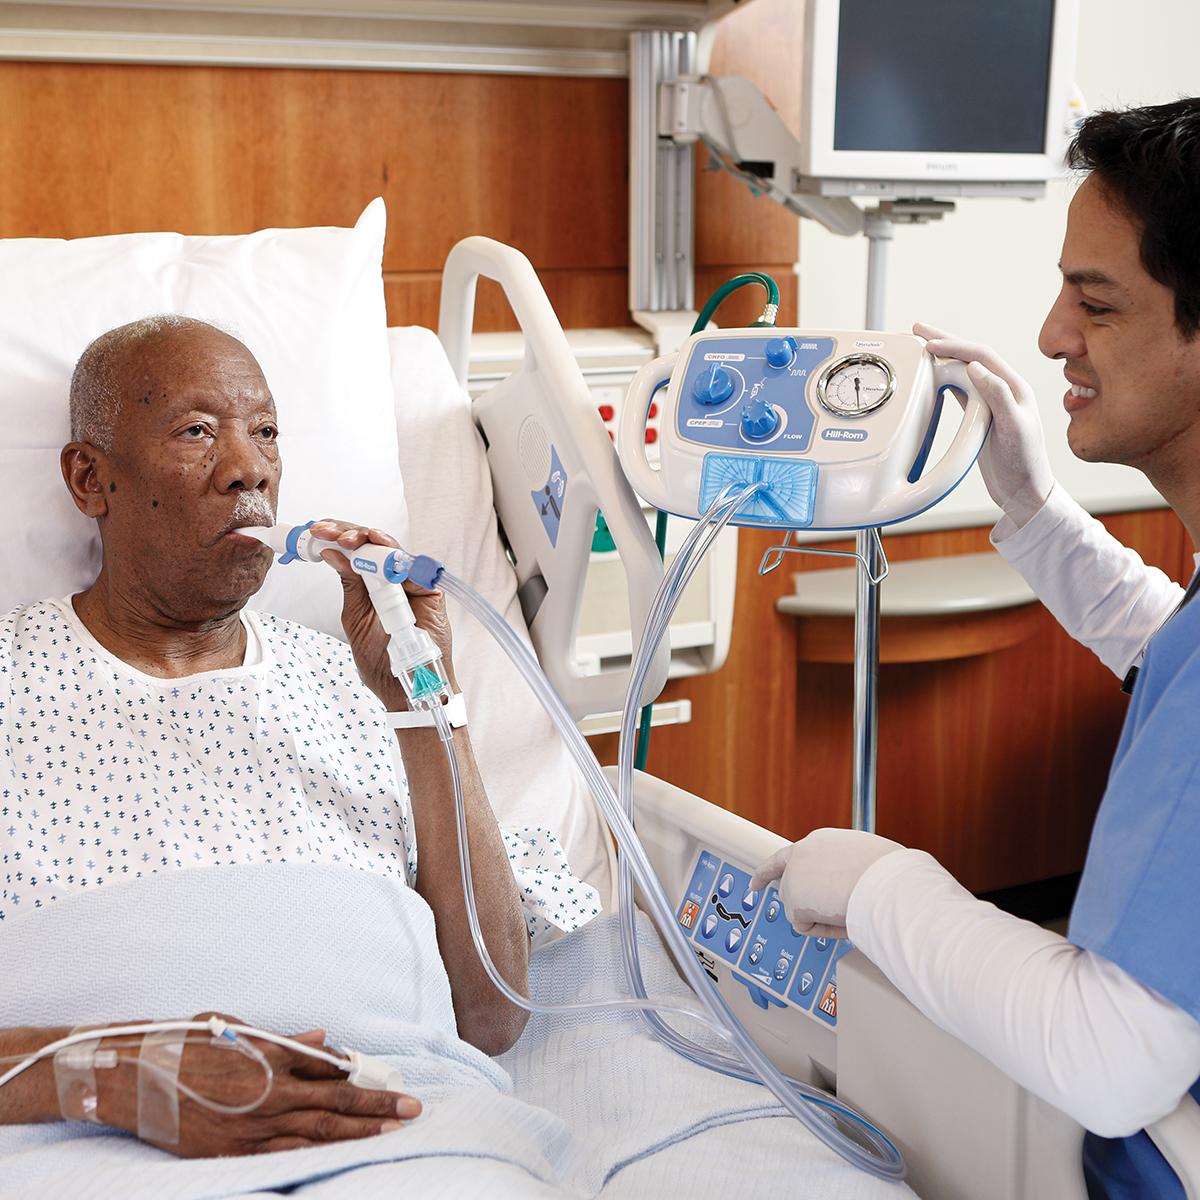 Um paciente mais velho em uma cama hospitalar recebe terapia do sistema MetaNeb, com o médico próximo